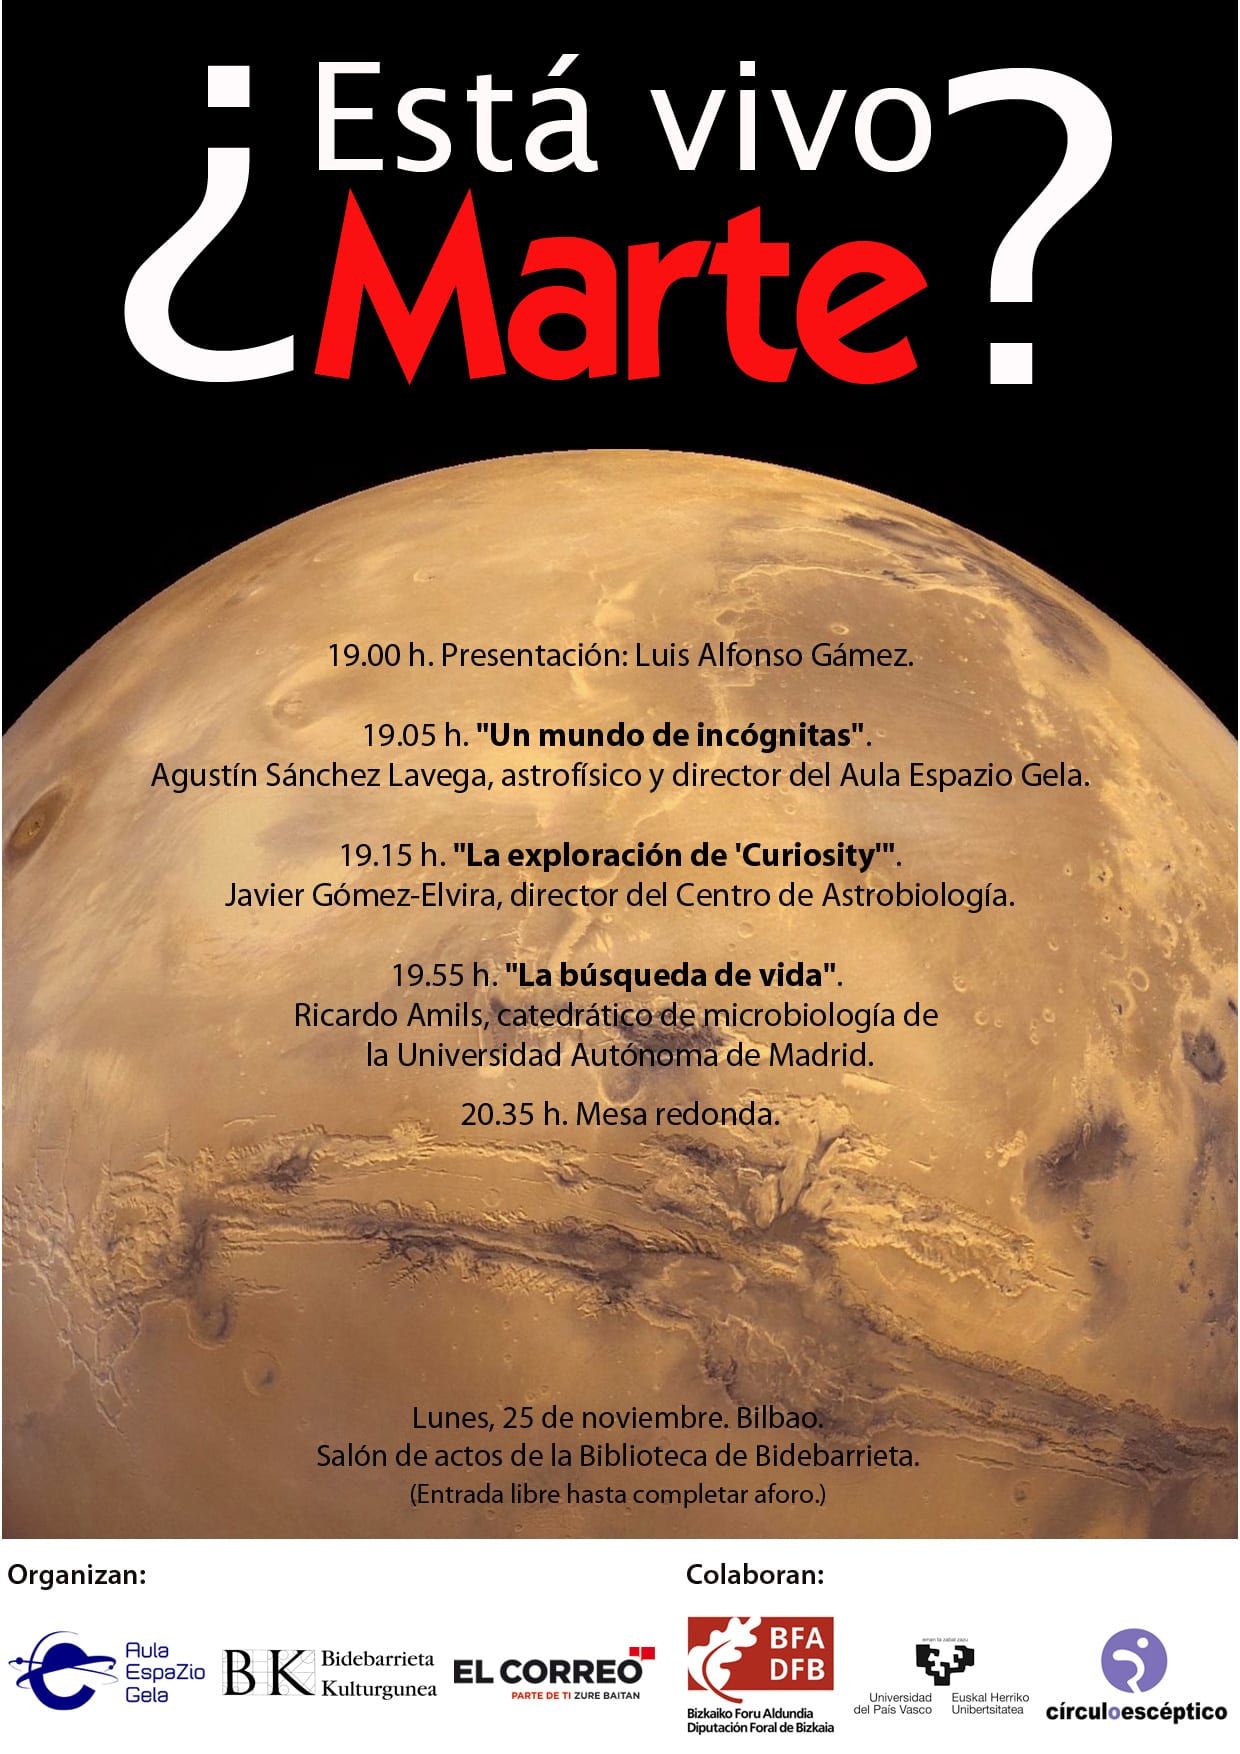 Cartel anunciador de la jornada '¿Está vivo Marte?', que se celebrará en Bilbao el 25 de noviembre.